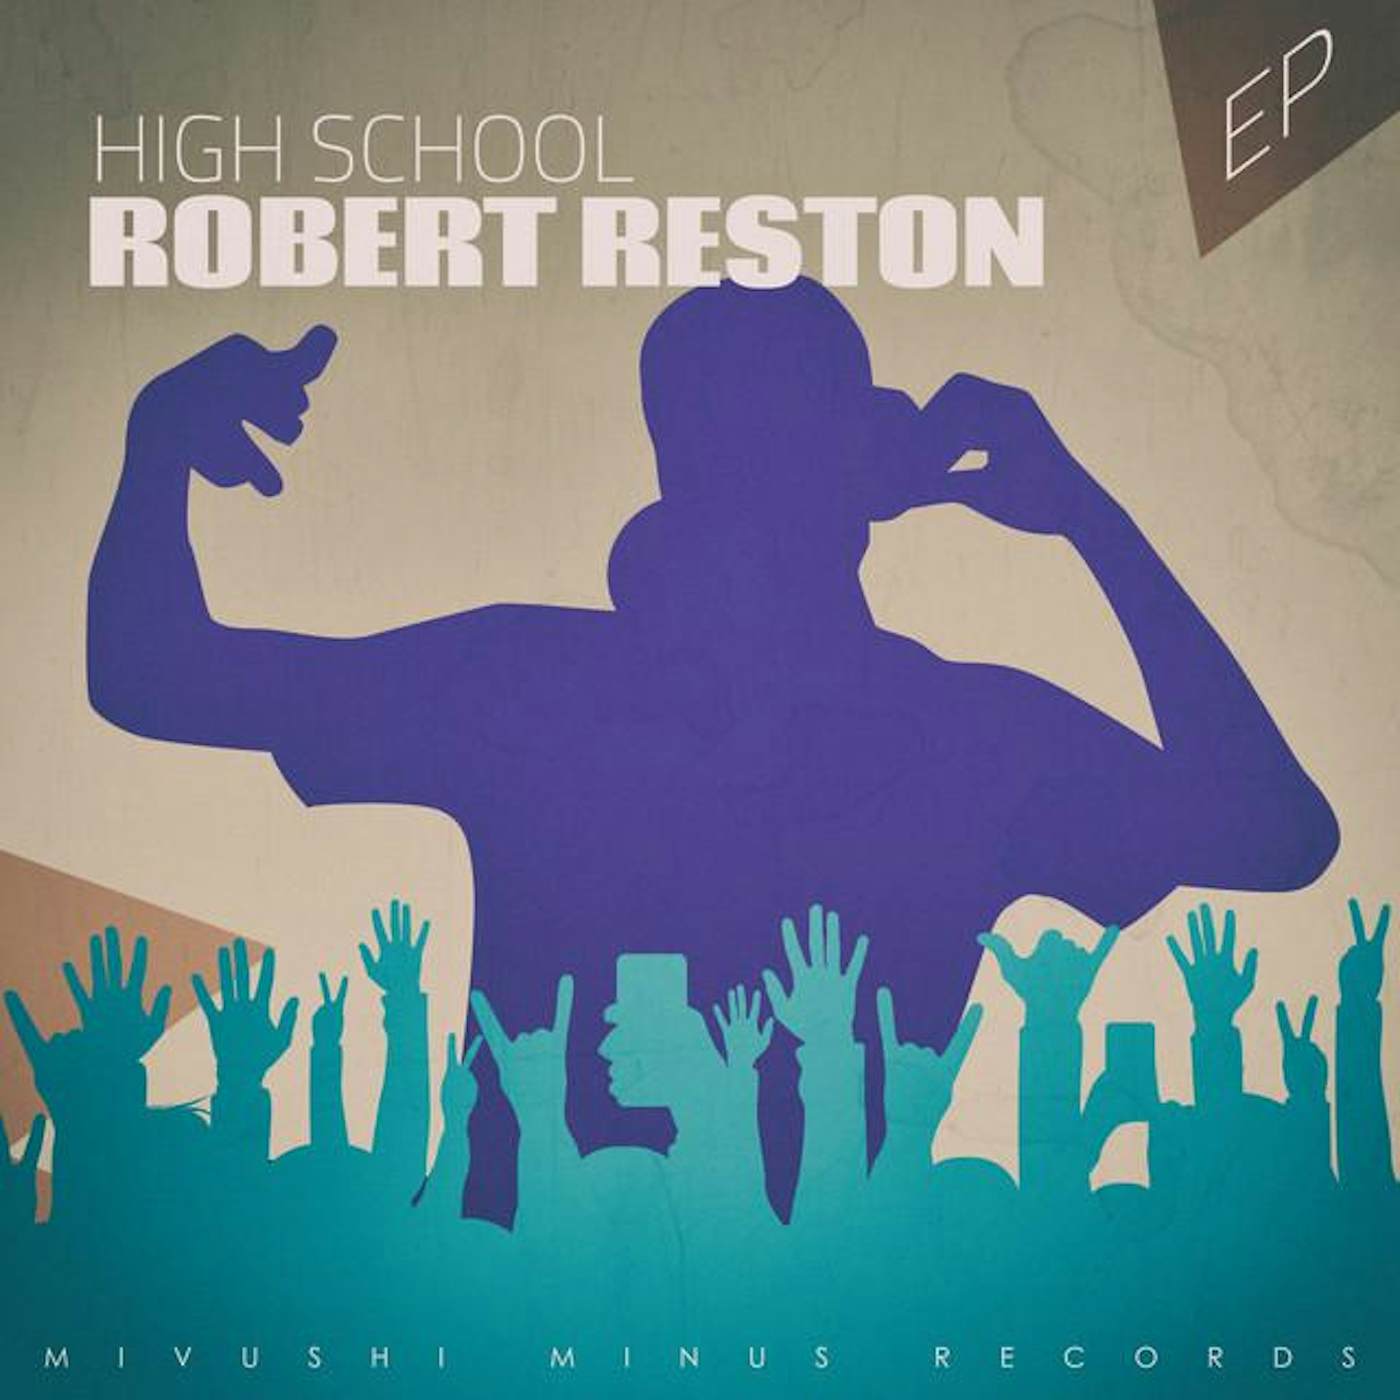 Robert Reston